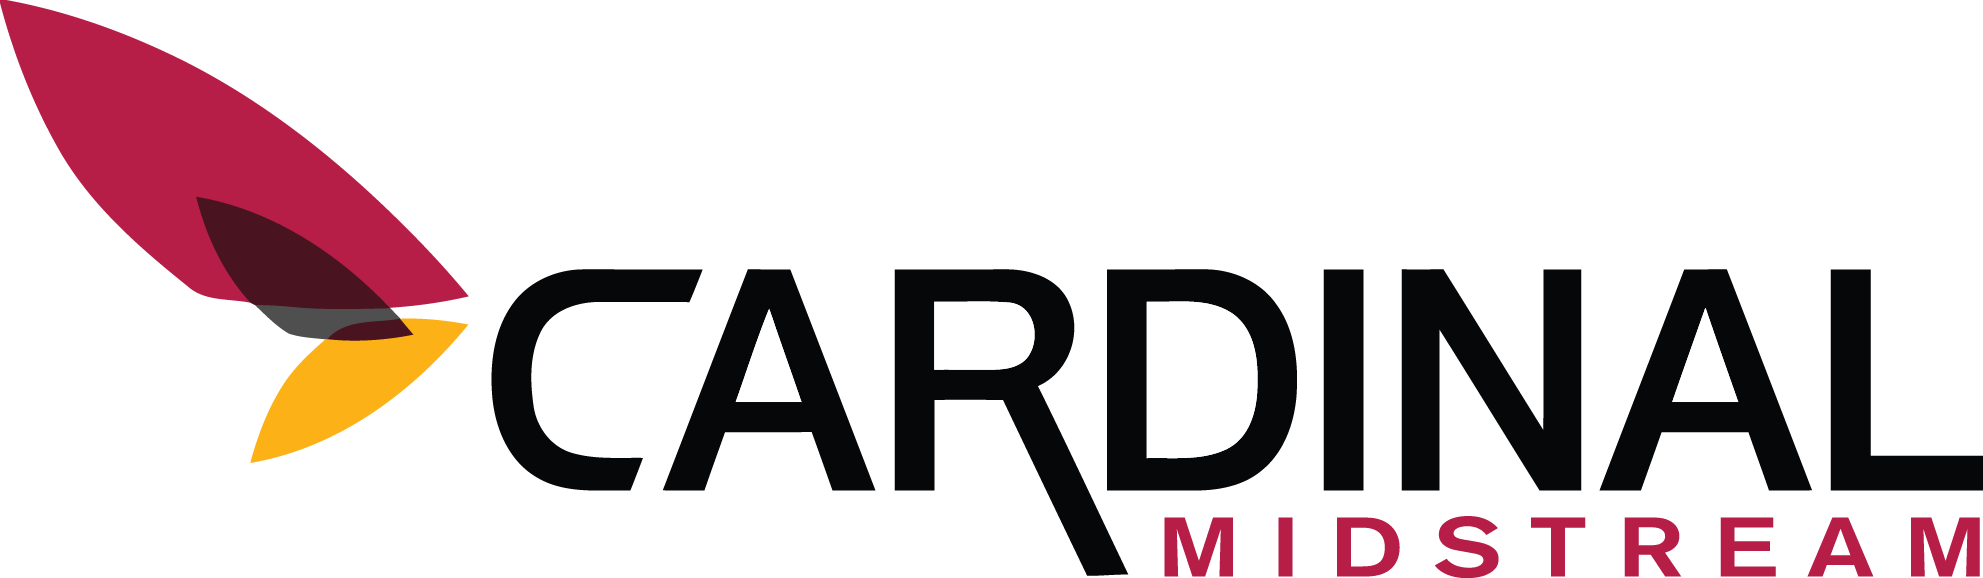 Cardinal Midstream logo